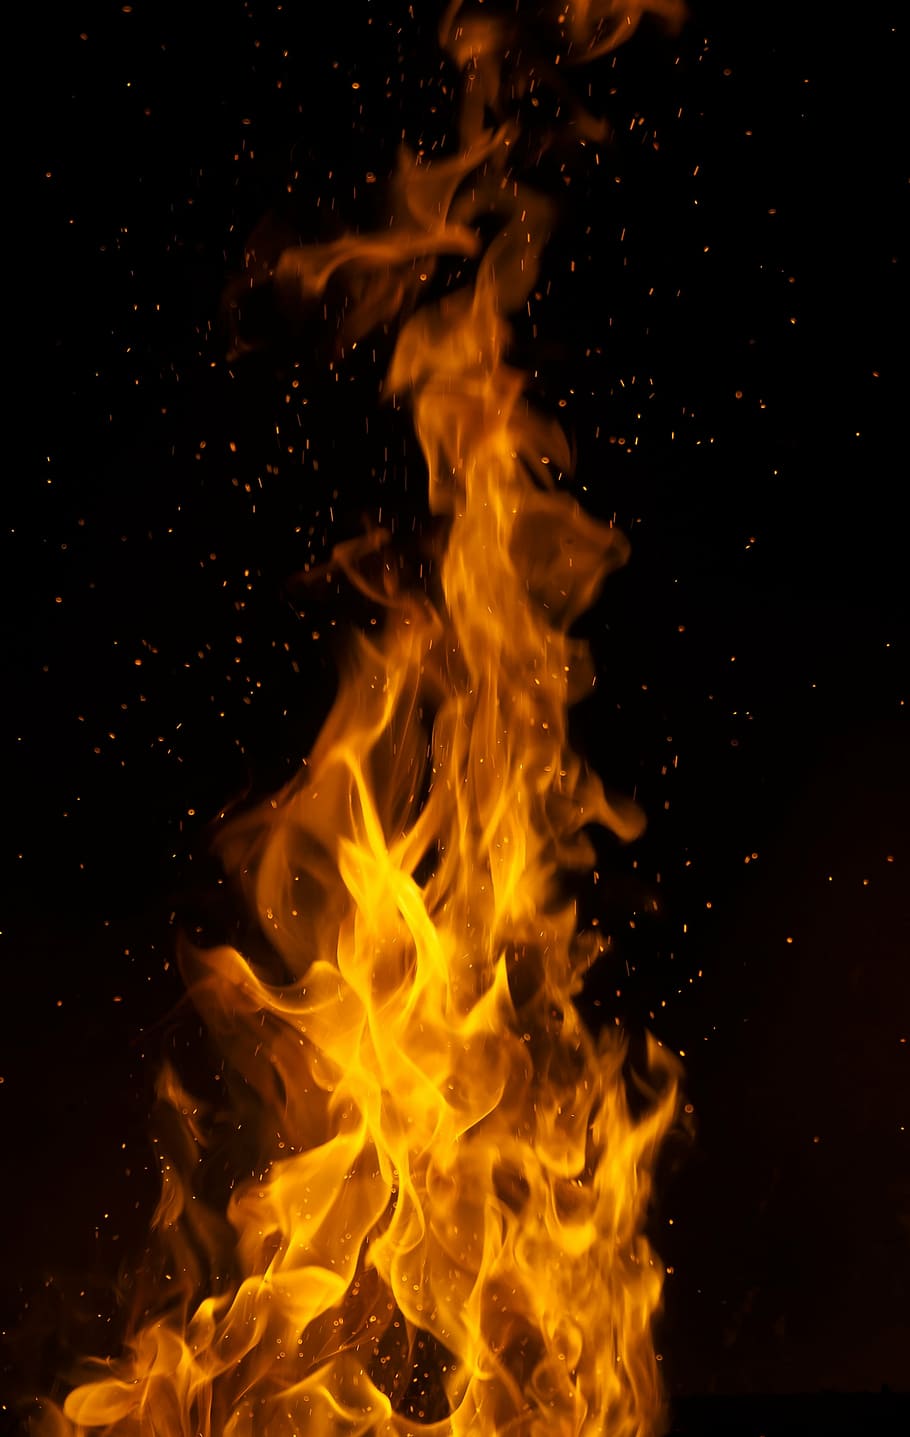 Ilustración de fuego, llama, fuego, fragua, calor - temperatura, rojo, quema, sin gente, amarillo, infierno